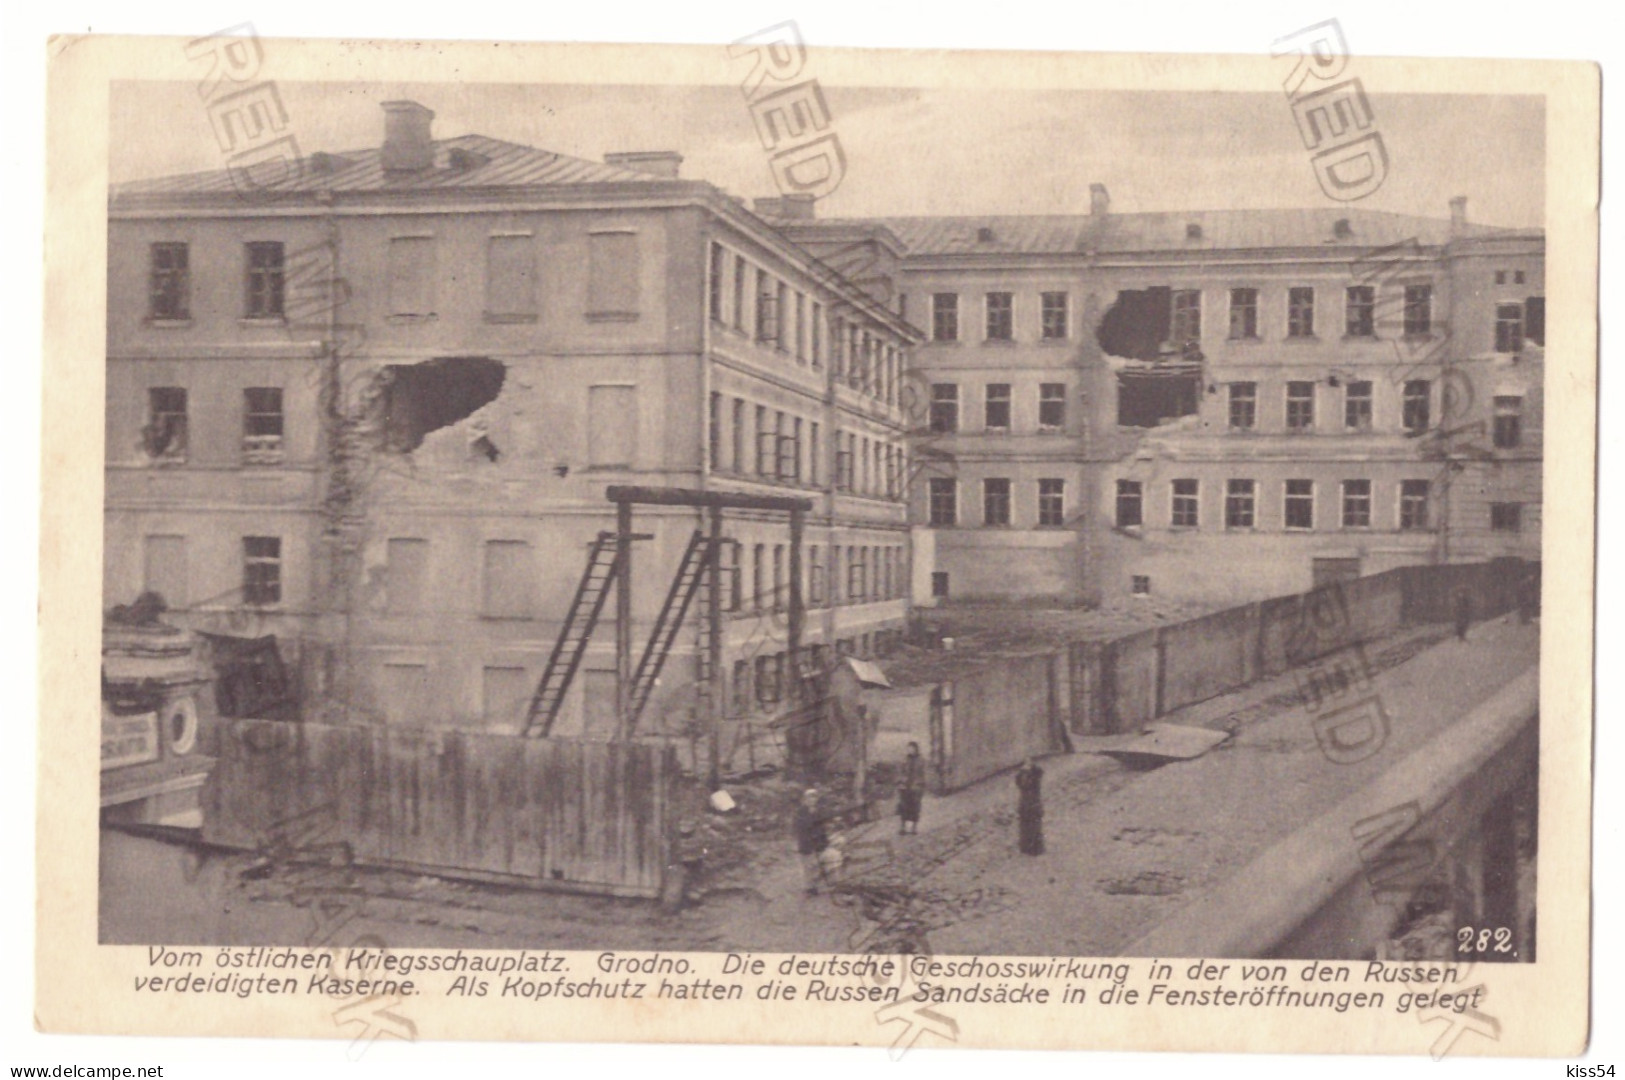 BL 38 - 21982 GRODNO, Bombed Military Barracks, Belarus - Old Postcard, CENSOR - Used - 1916 - Belarus